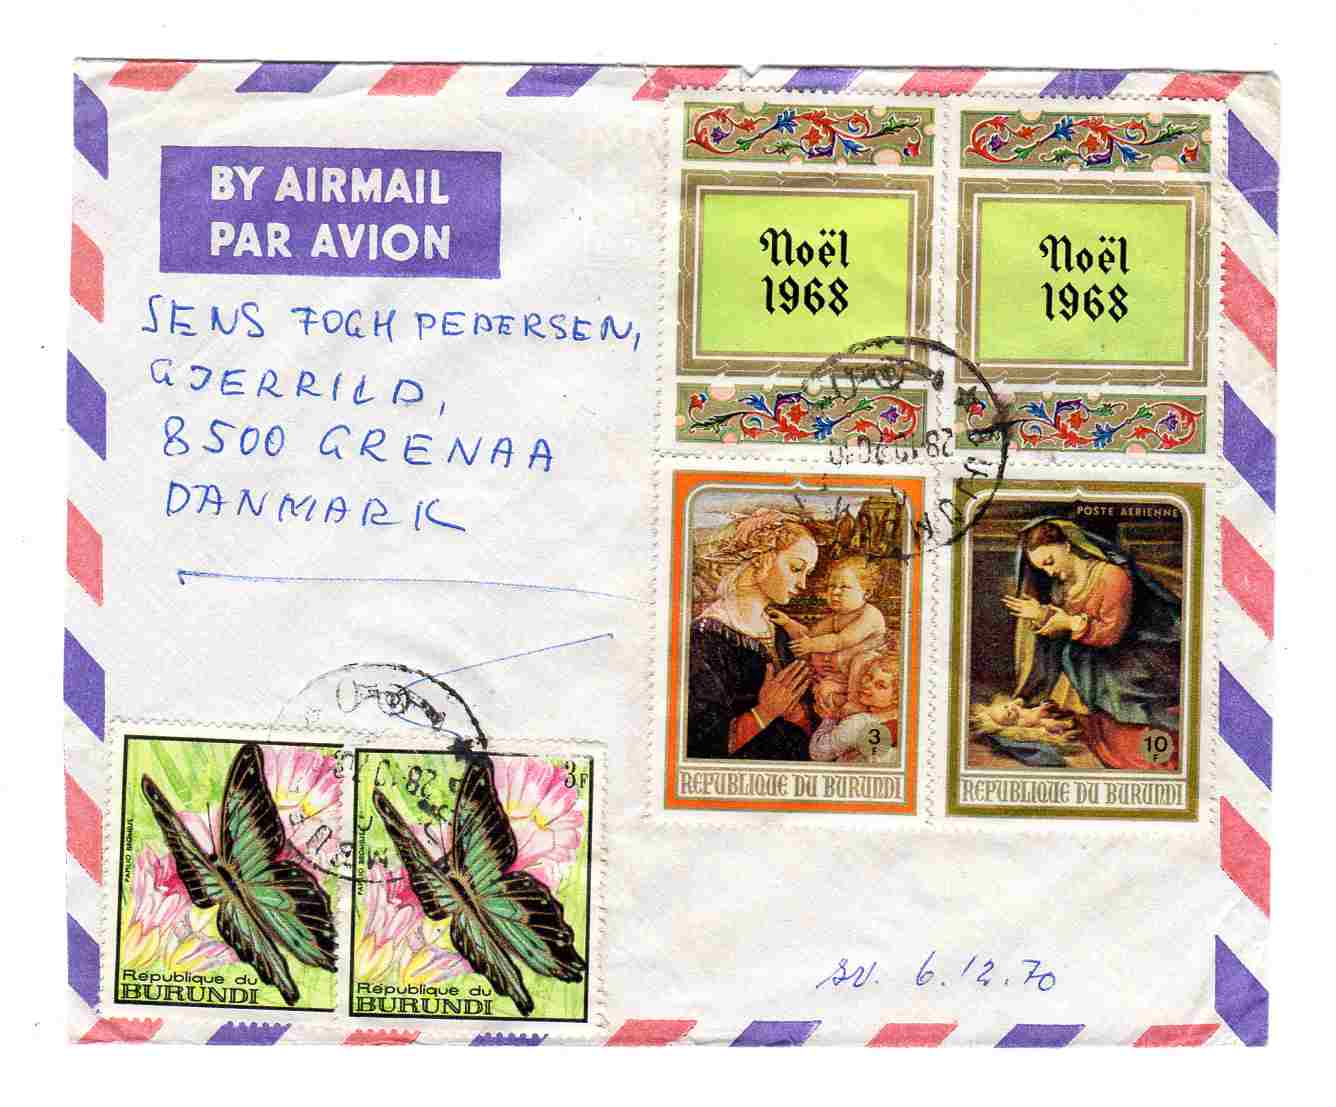 Julebrev 1970 Air mail